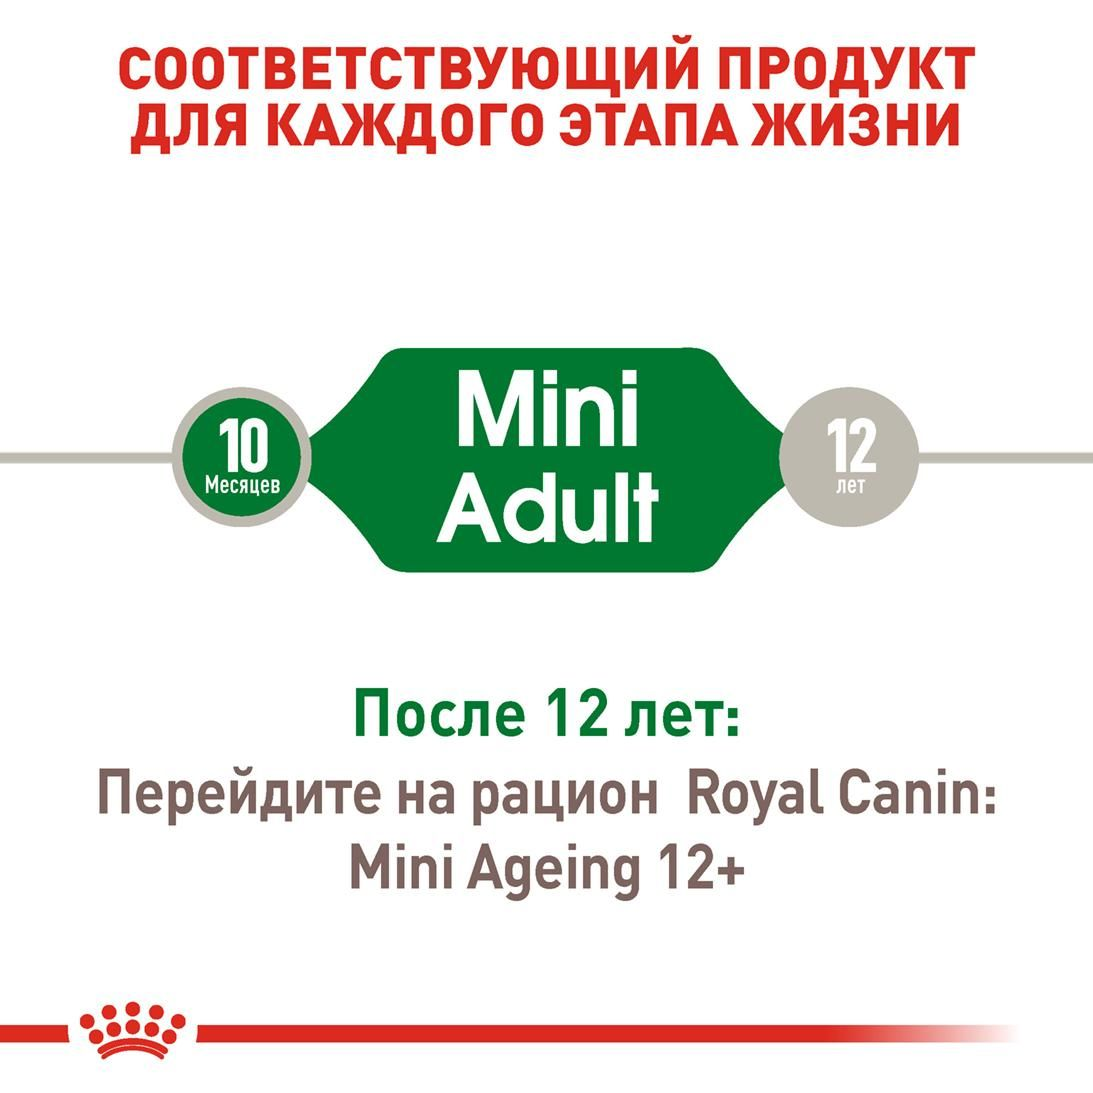 Mini Adult